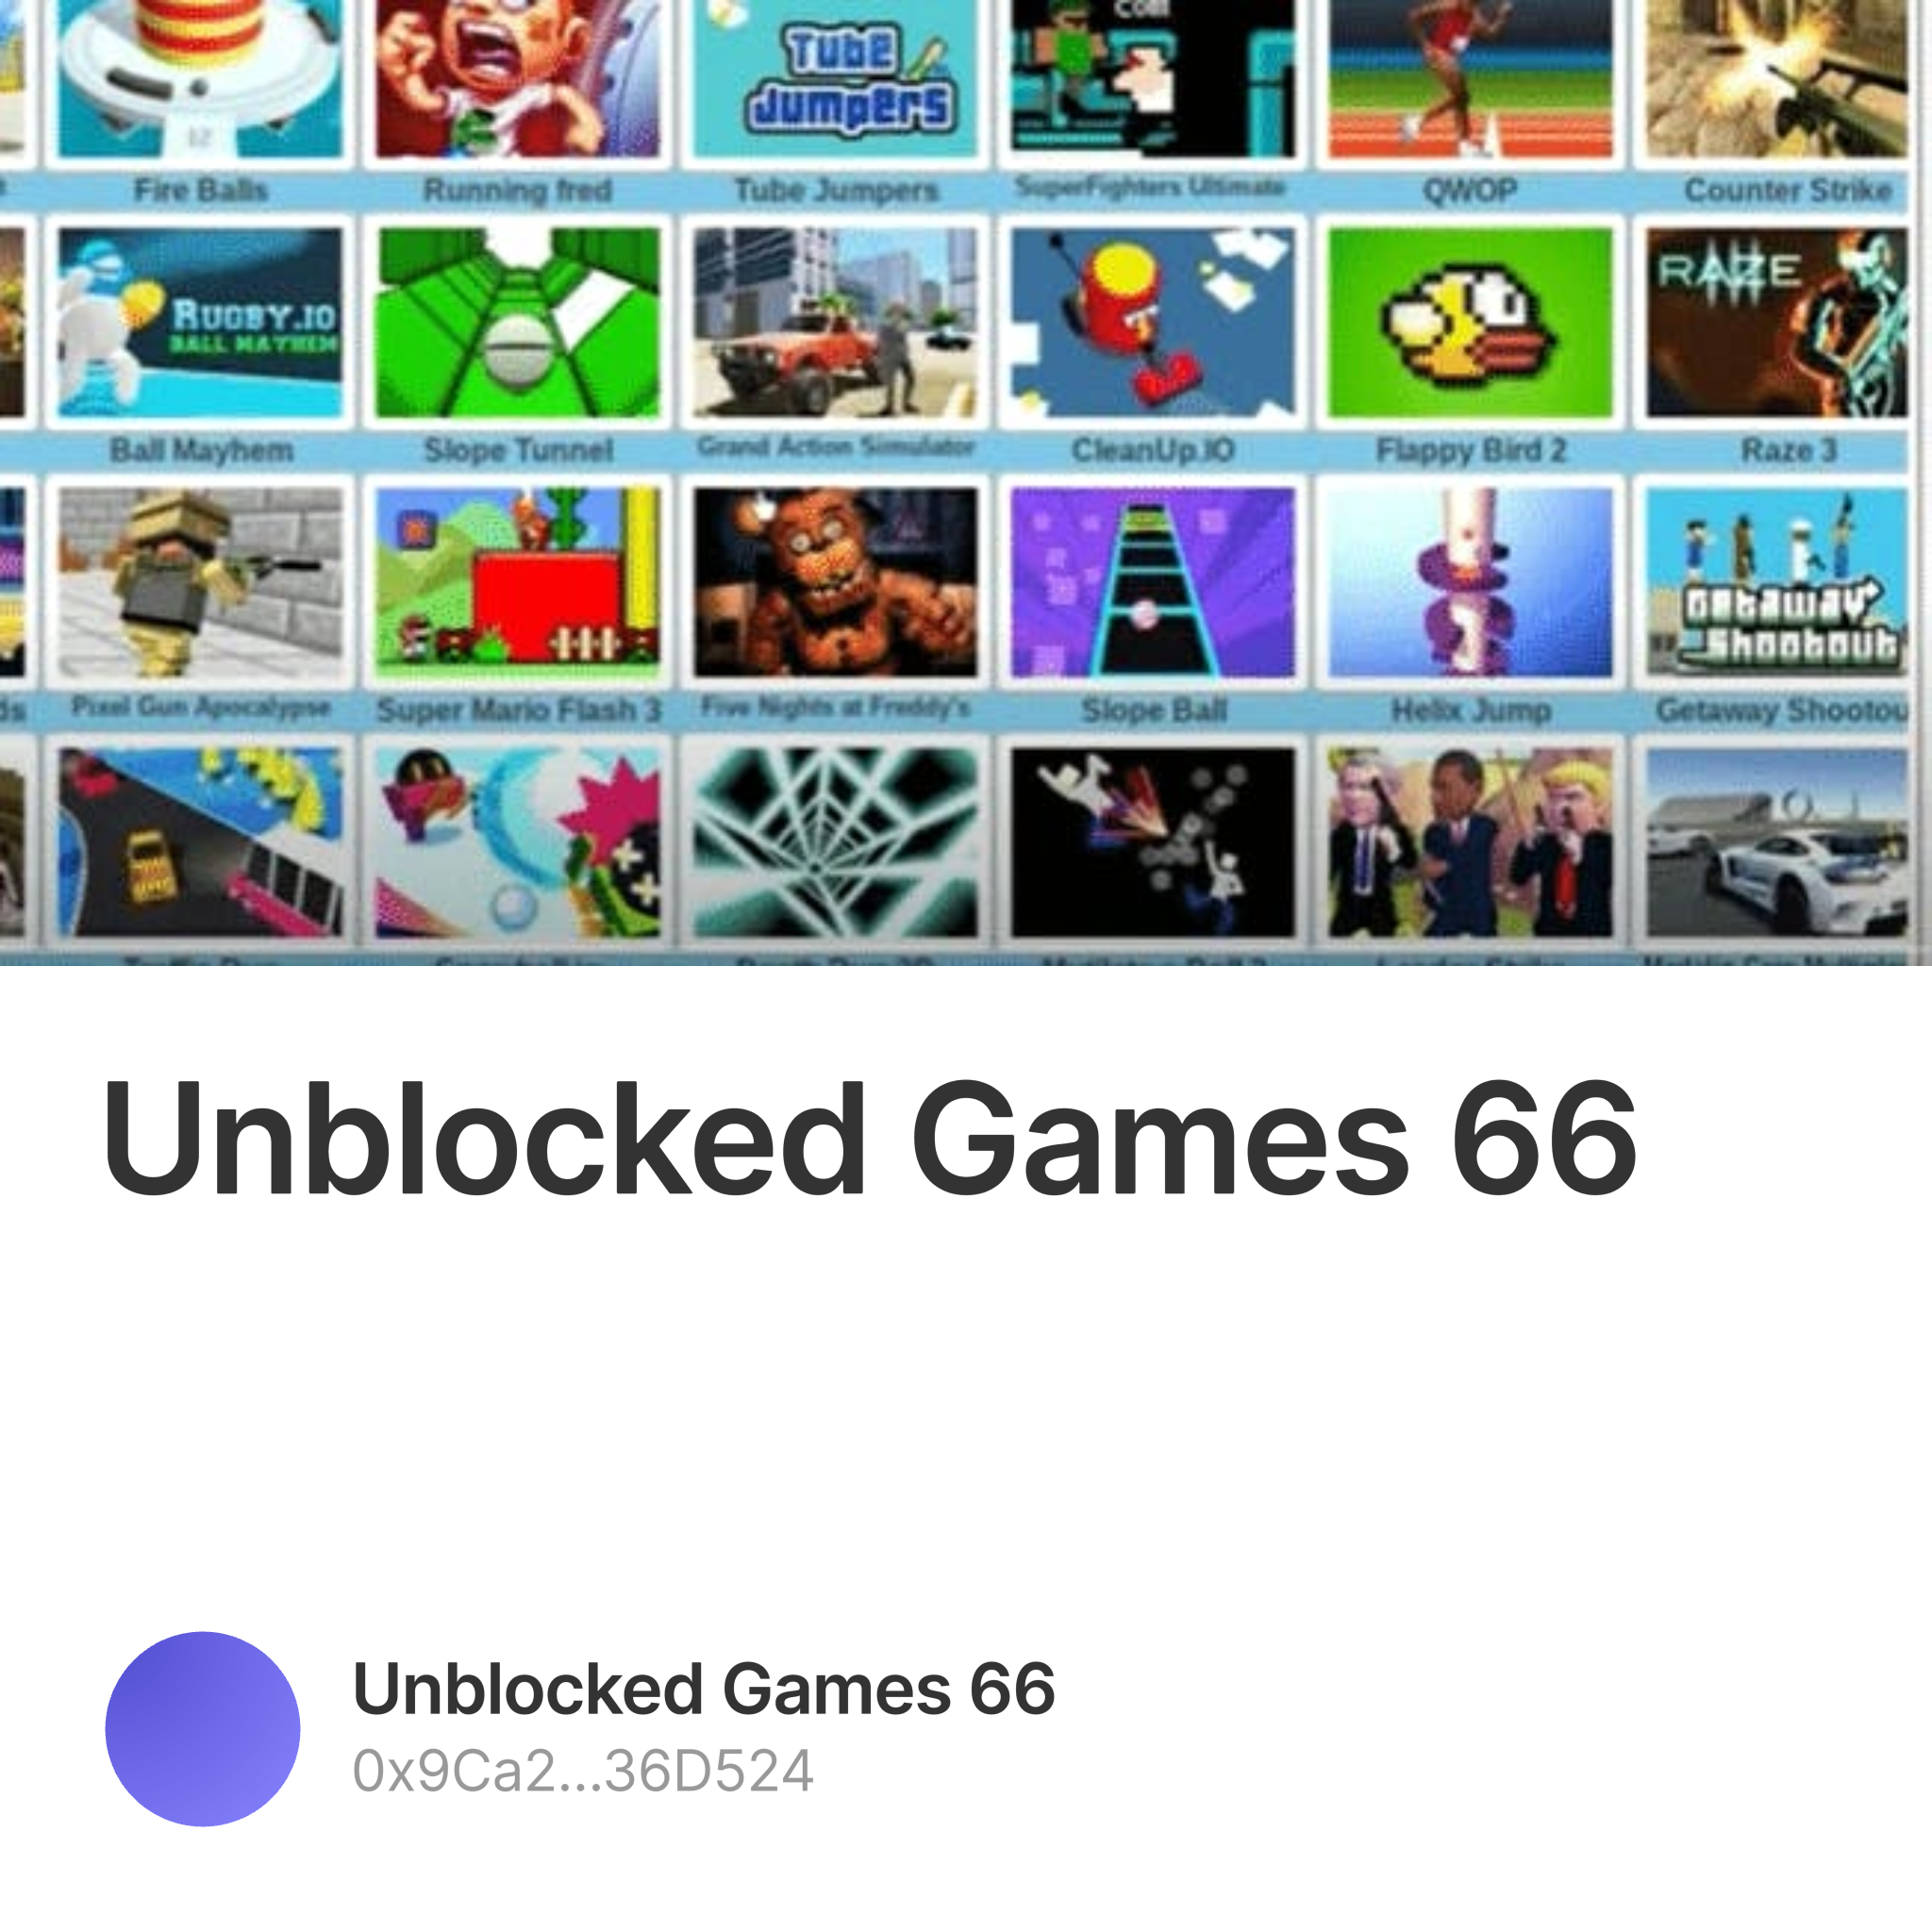 Unblocked Games 66 by unblockedgamesez66 - Issuu